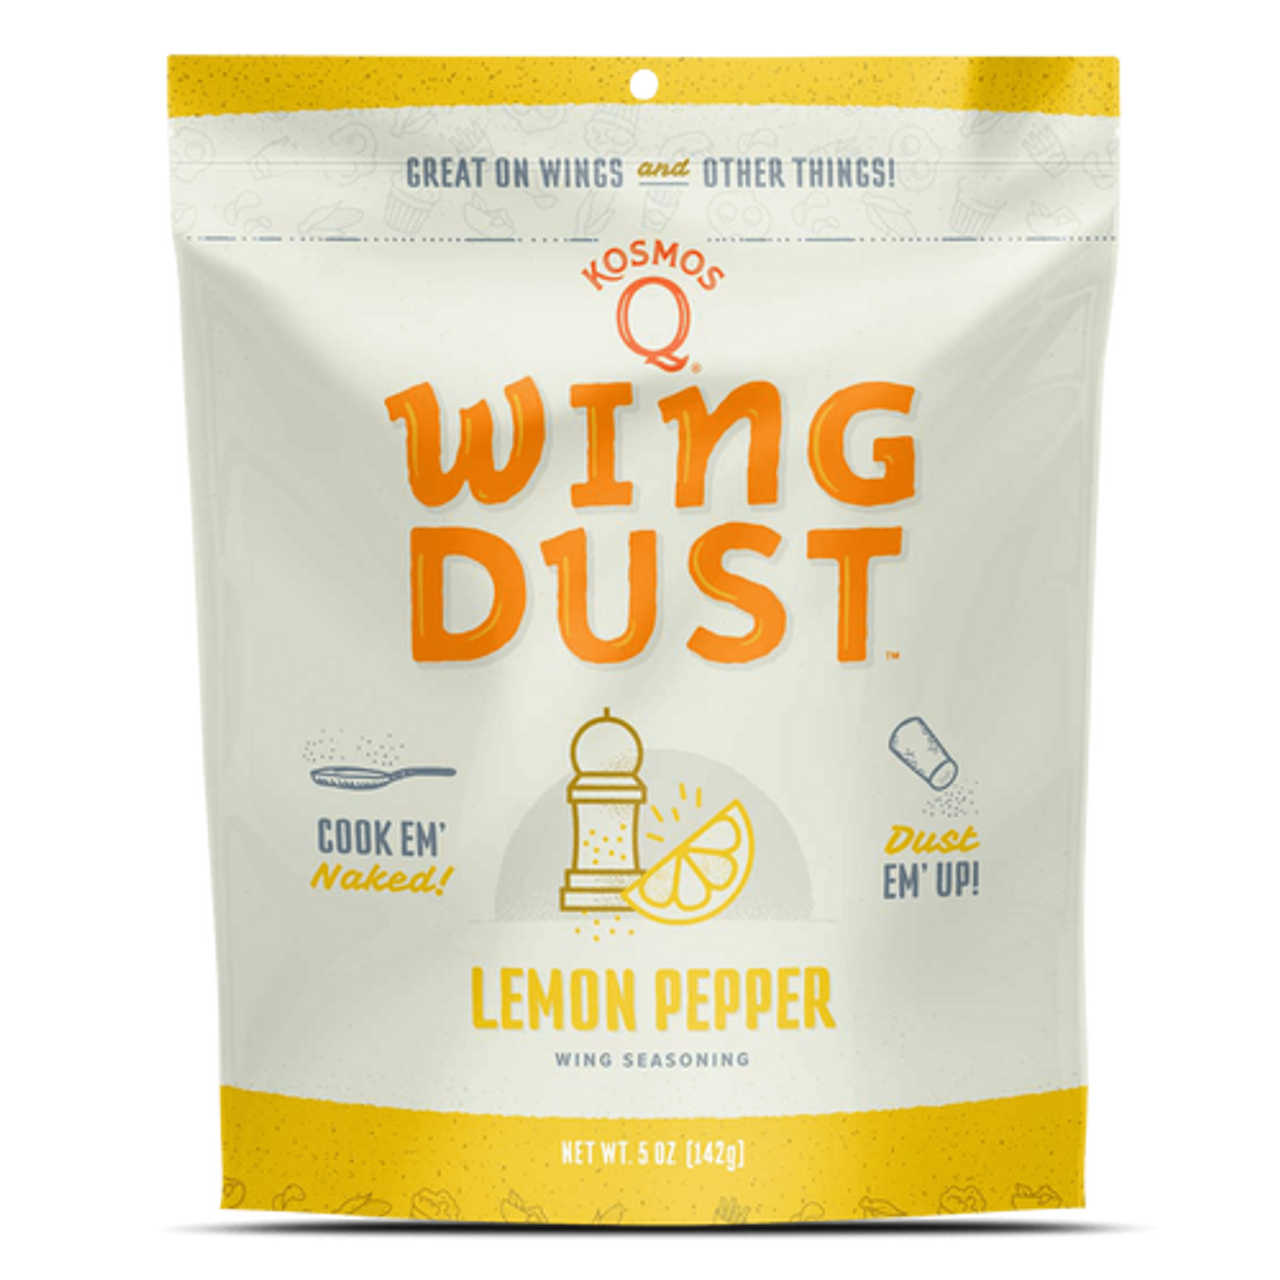 Kosmos Lemon Pepper Wing Dust